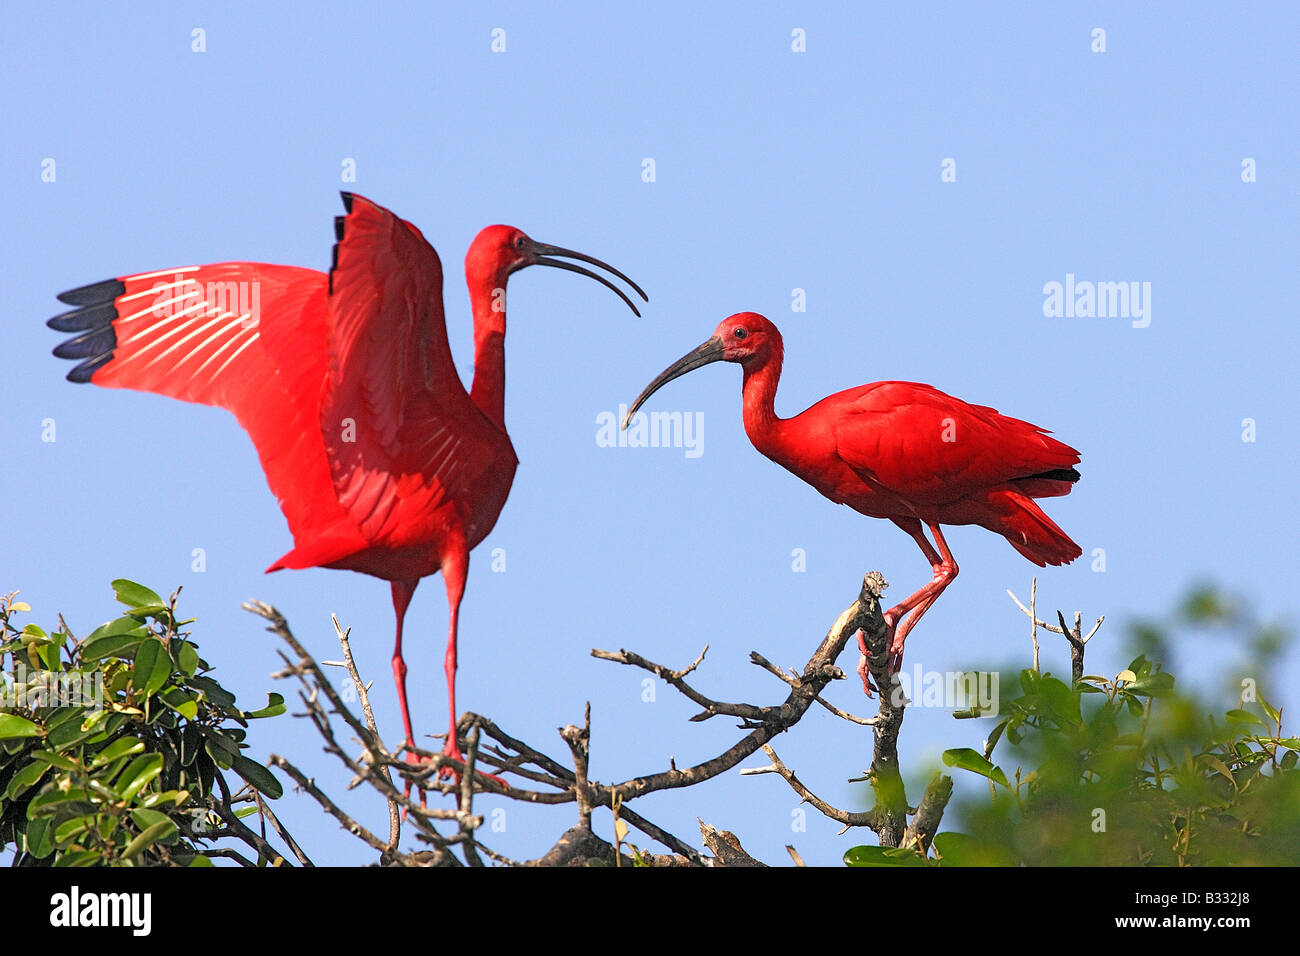 Ibis rouge (Eudocimus ruber), deux adultes perché sur une branche Banque D'Images